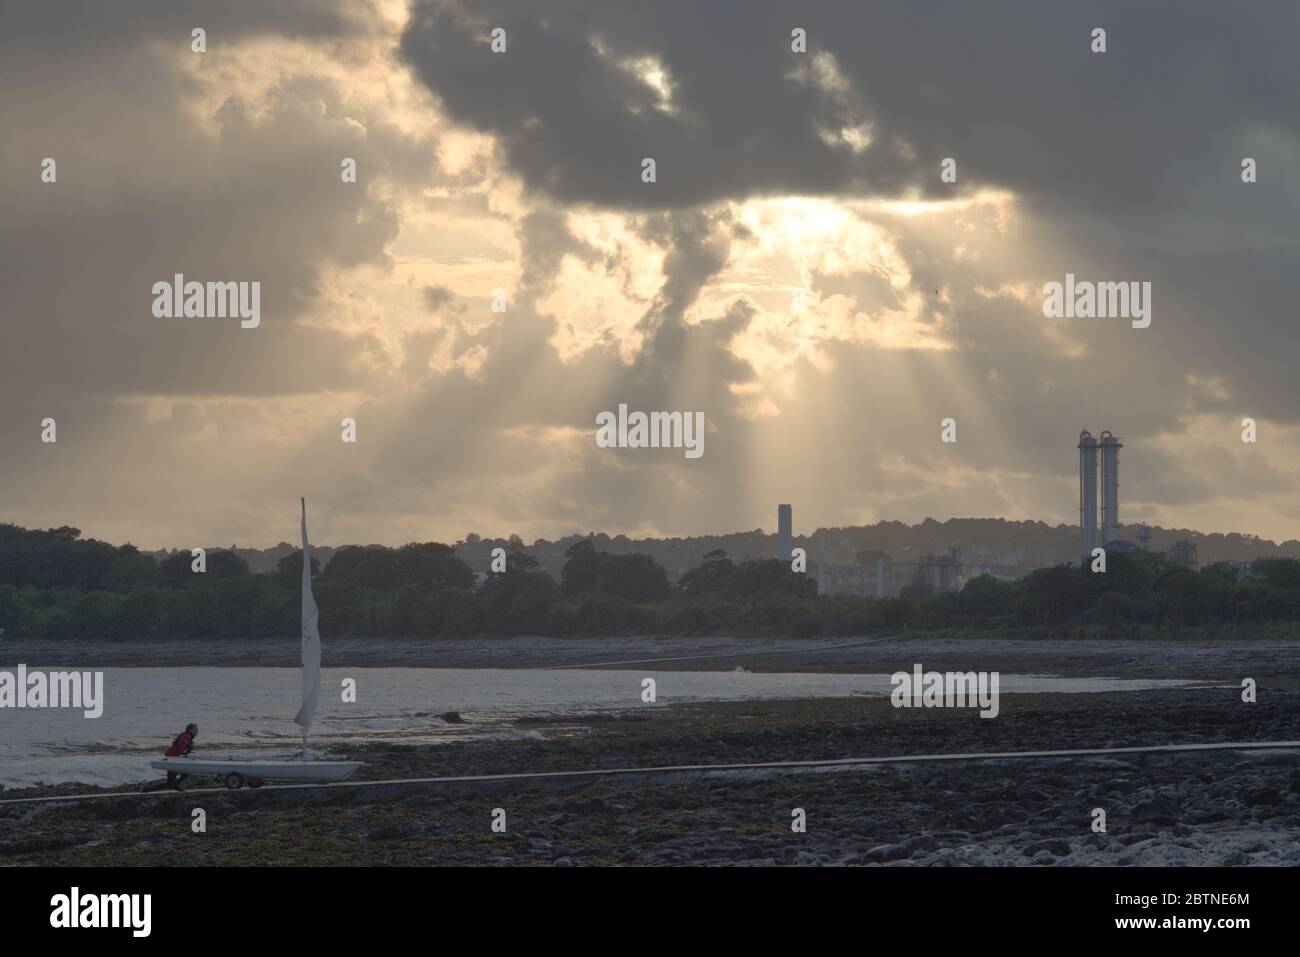 Un homme pousse son yacht sur une jetée sur une plage de sable, avec des tours industrielles d'usine derrière lui dans le sud du pays de galles Banque D'Images